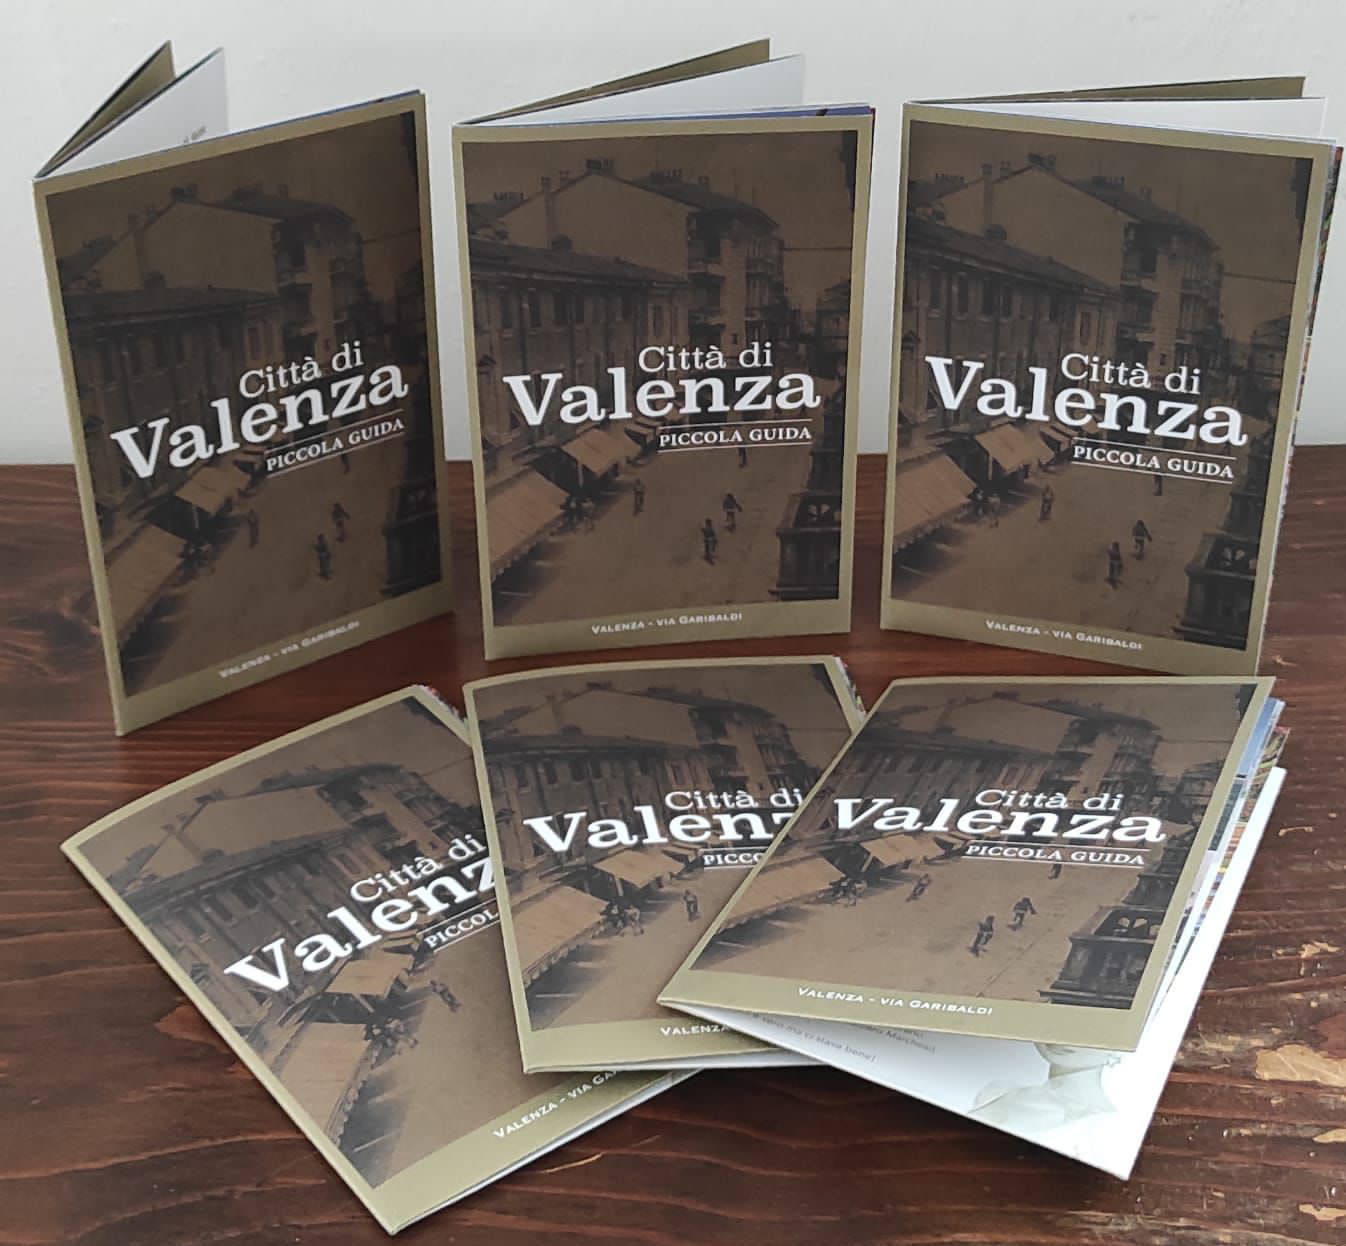 Una guida per i turisti che arrivano a Valenza ma anche per riscoprire i paesaggi della città